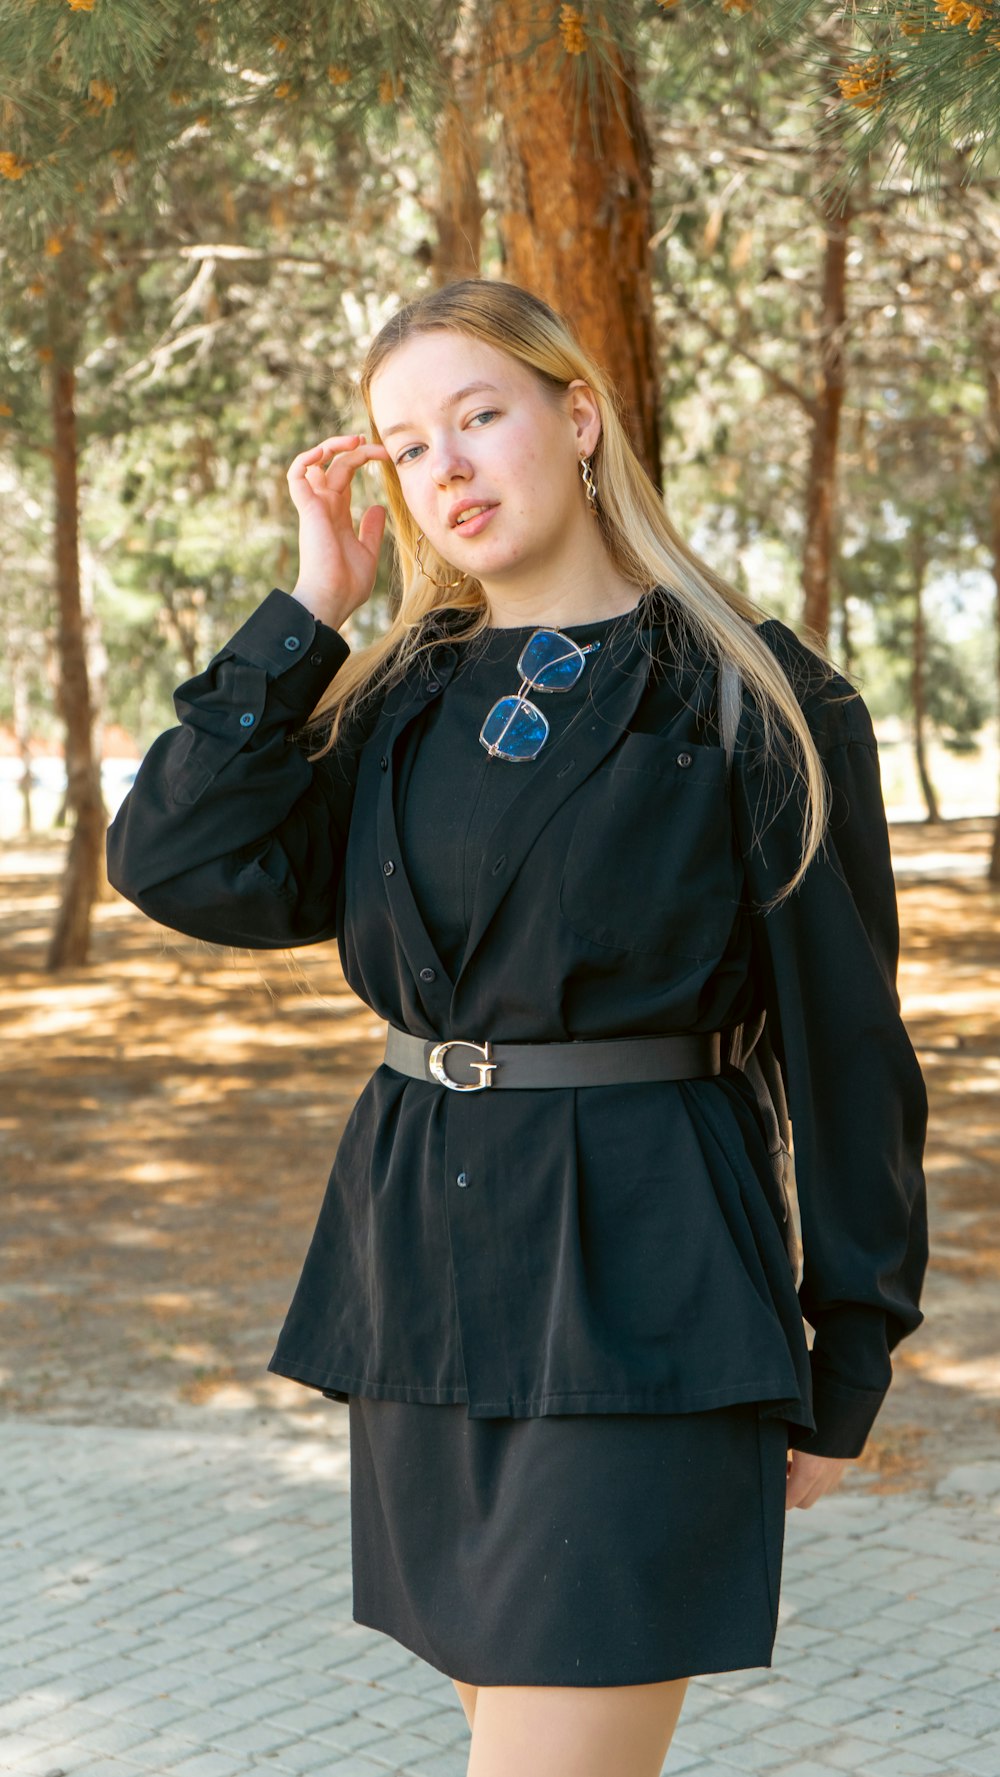 Una mujer con un vestido negro posando para una foto